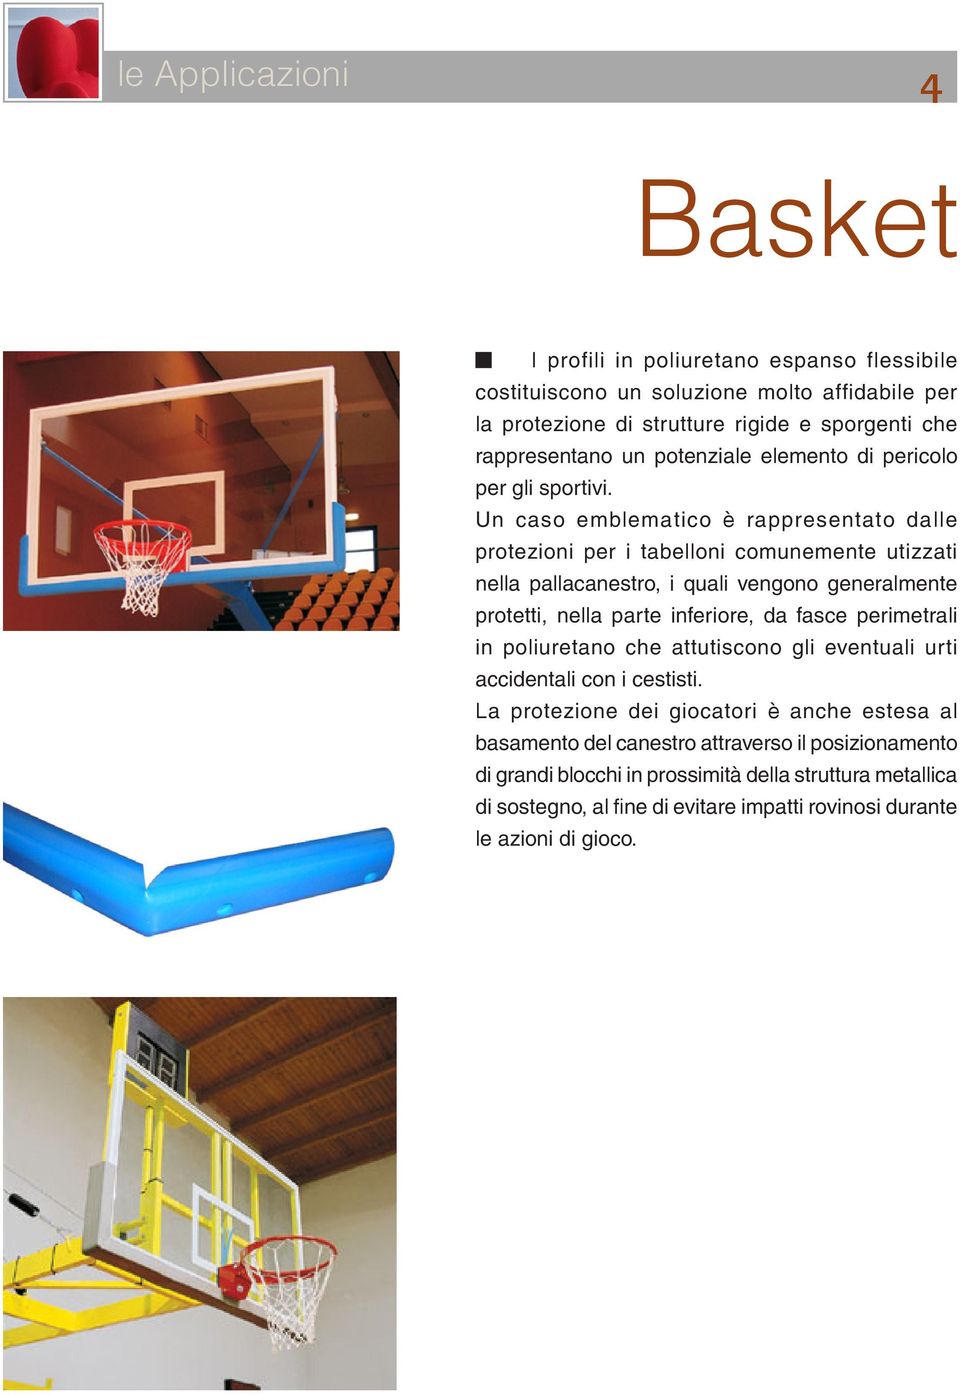 Un caso emblematico è rappresentato dalle protezioni per i tabelloni comunemente utizzati nella pallacanestro, i quali vengono generalmente protetti, nella parte inferiore, da fasce